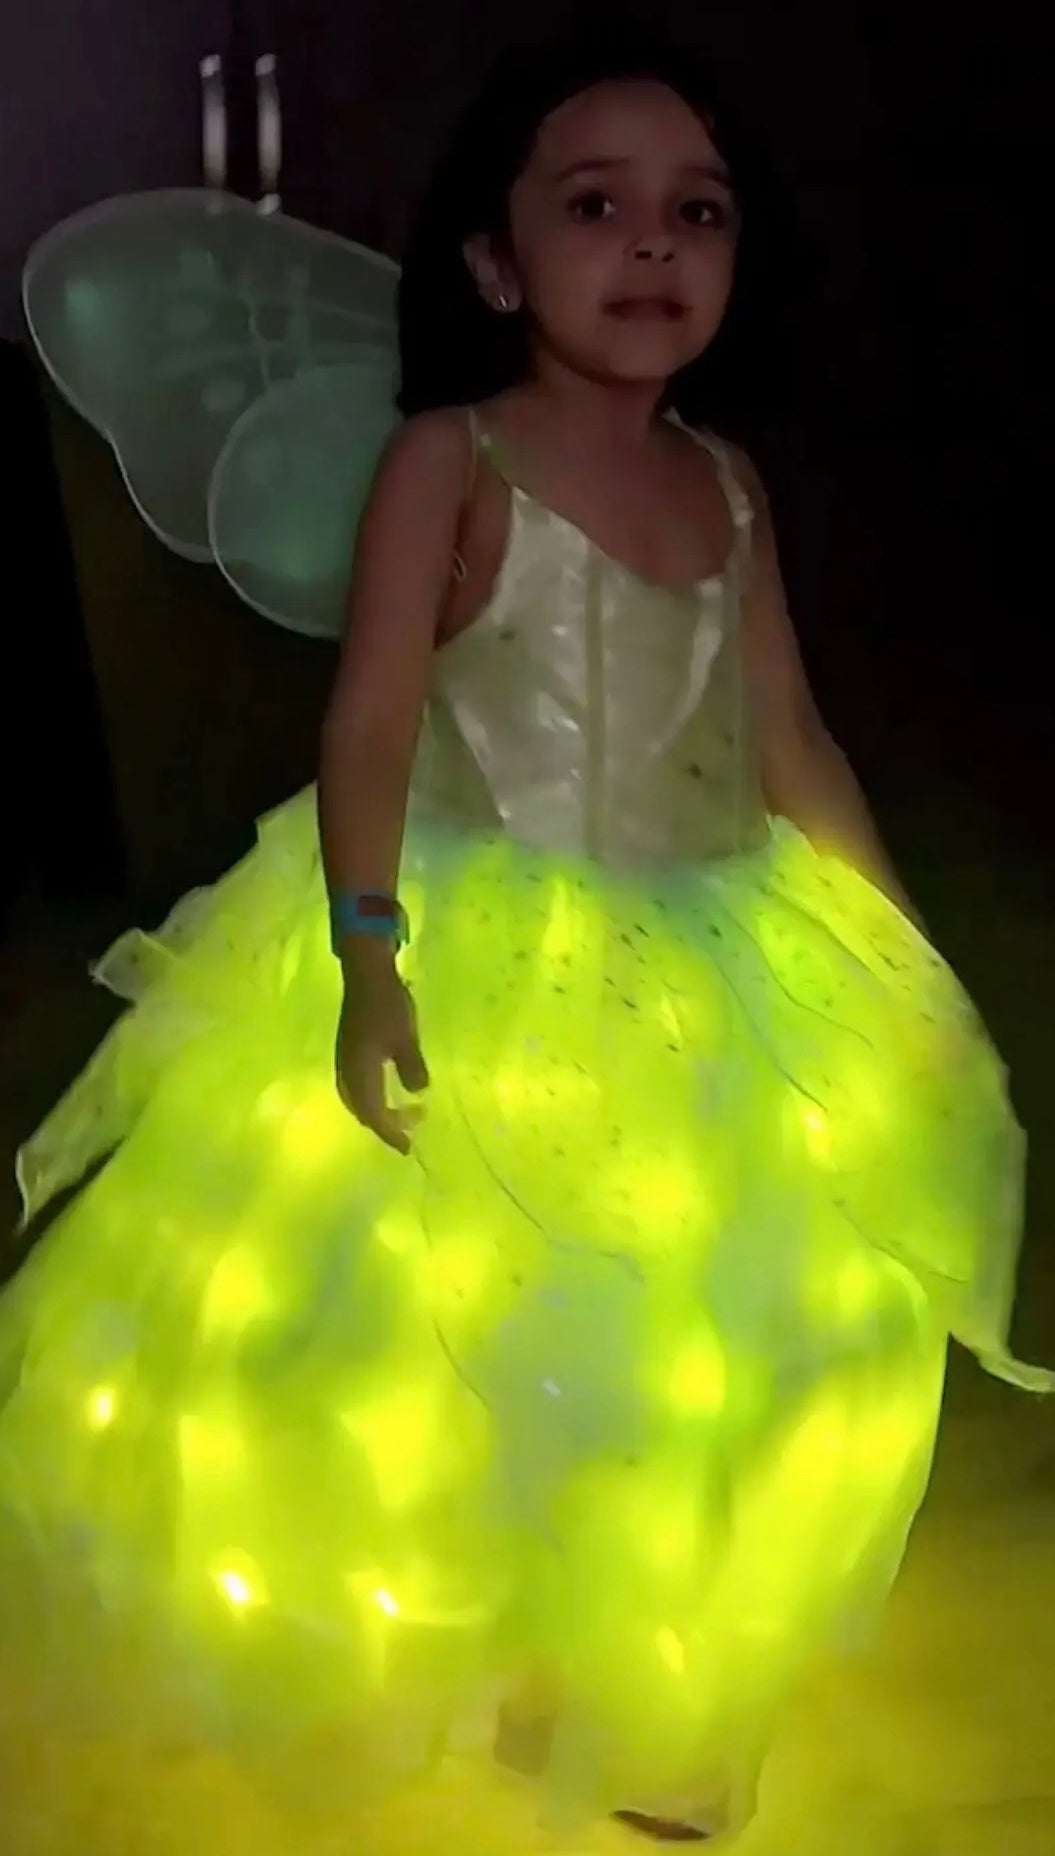 Tinker Bell Twinkle Dress